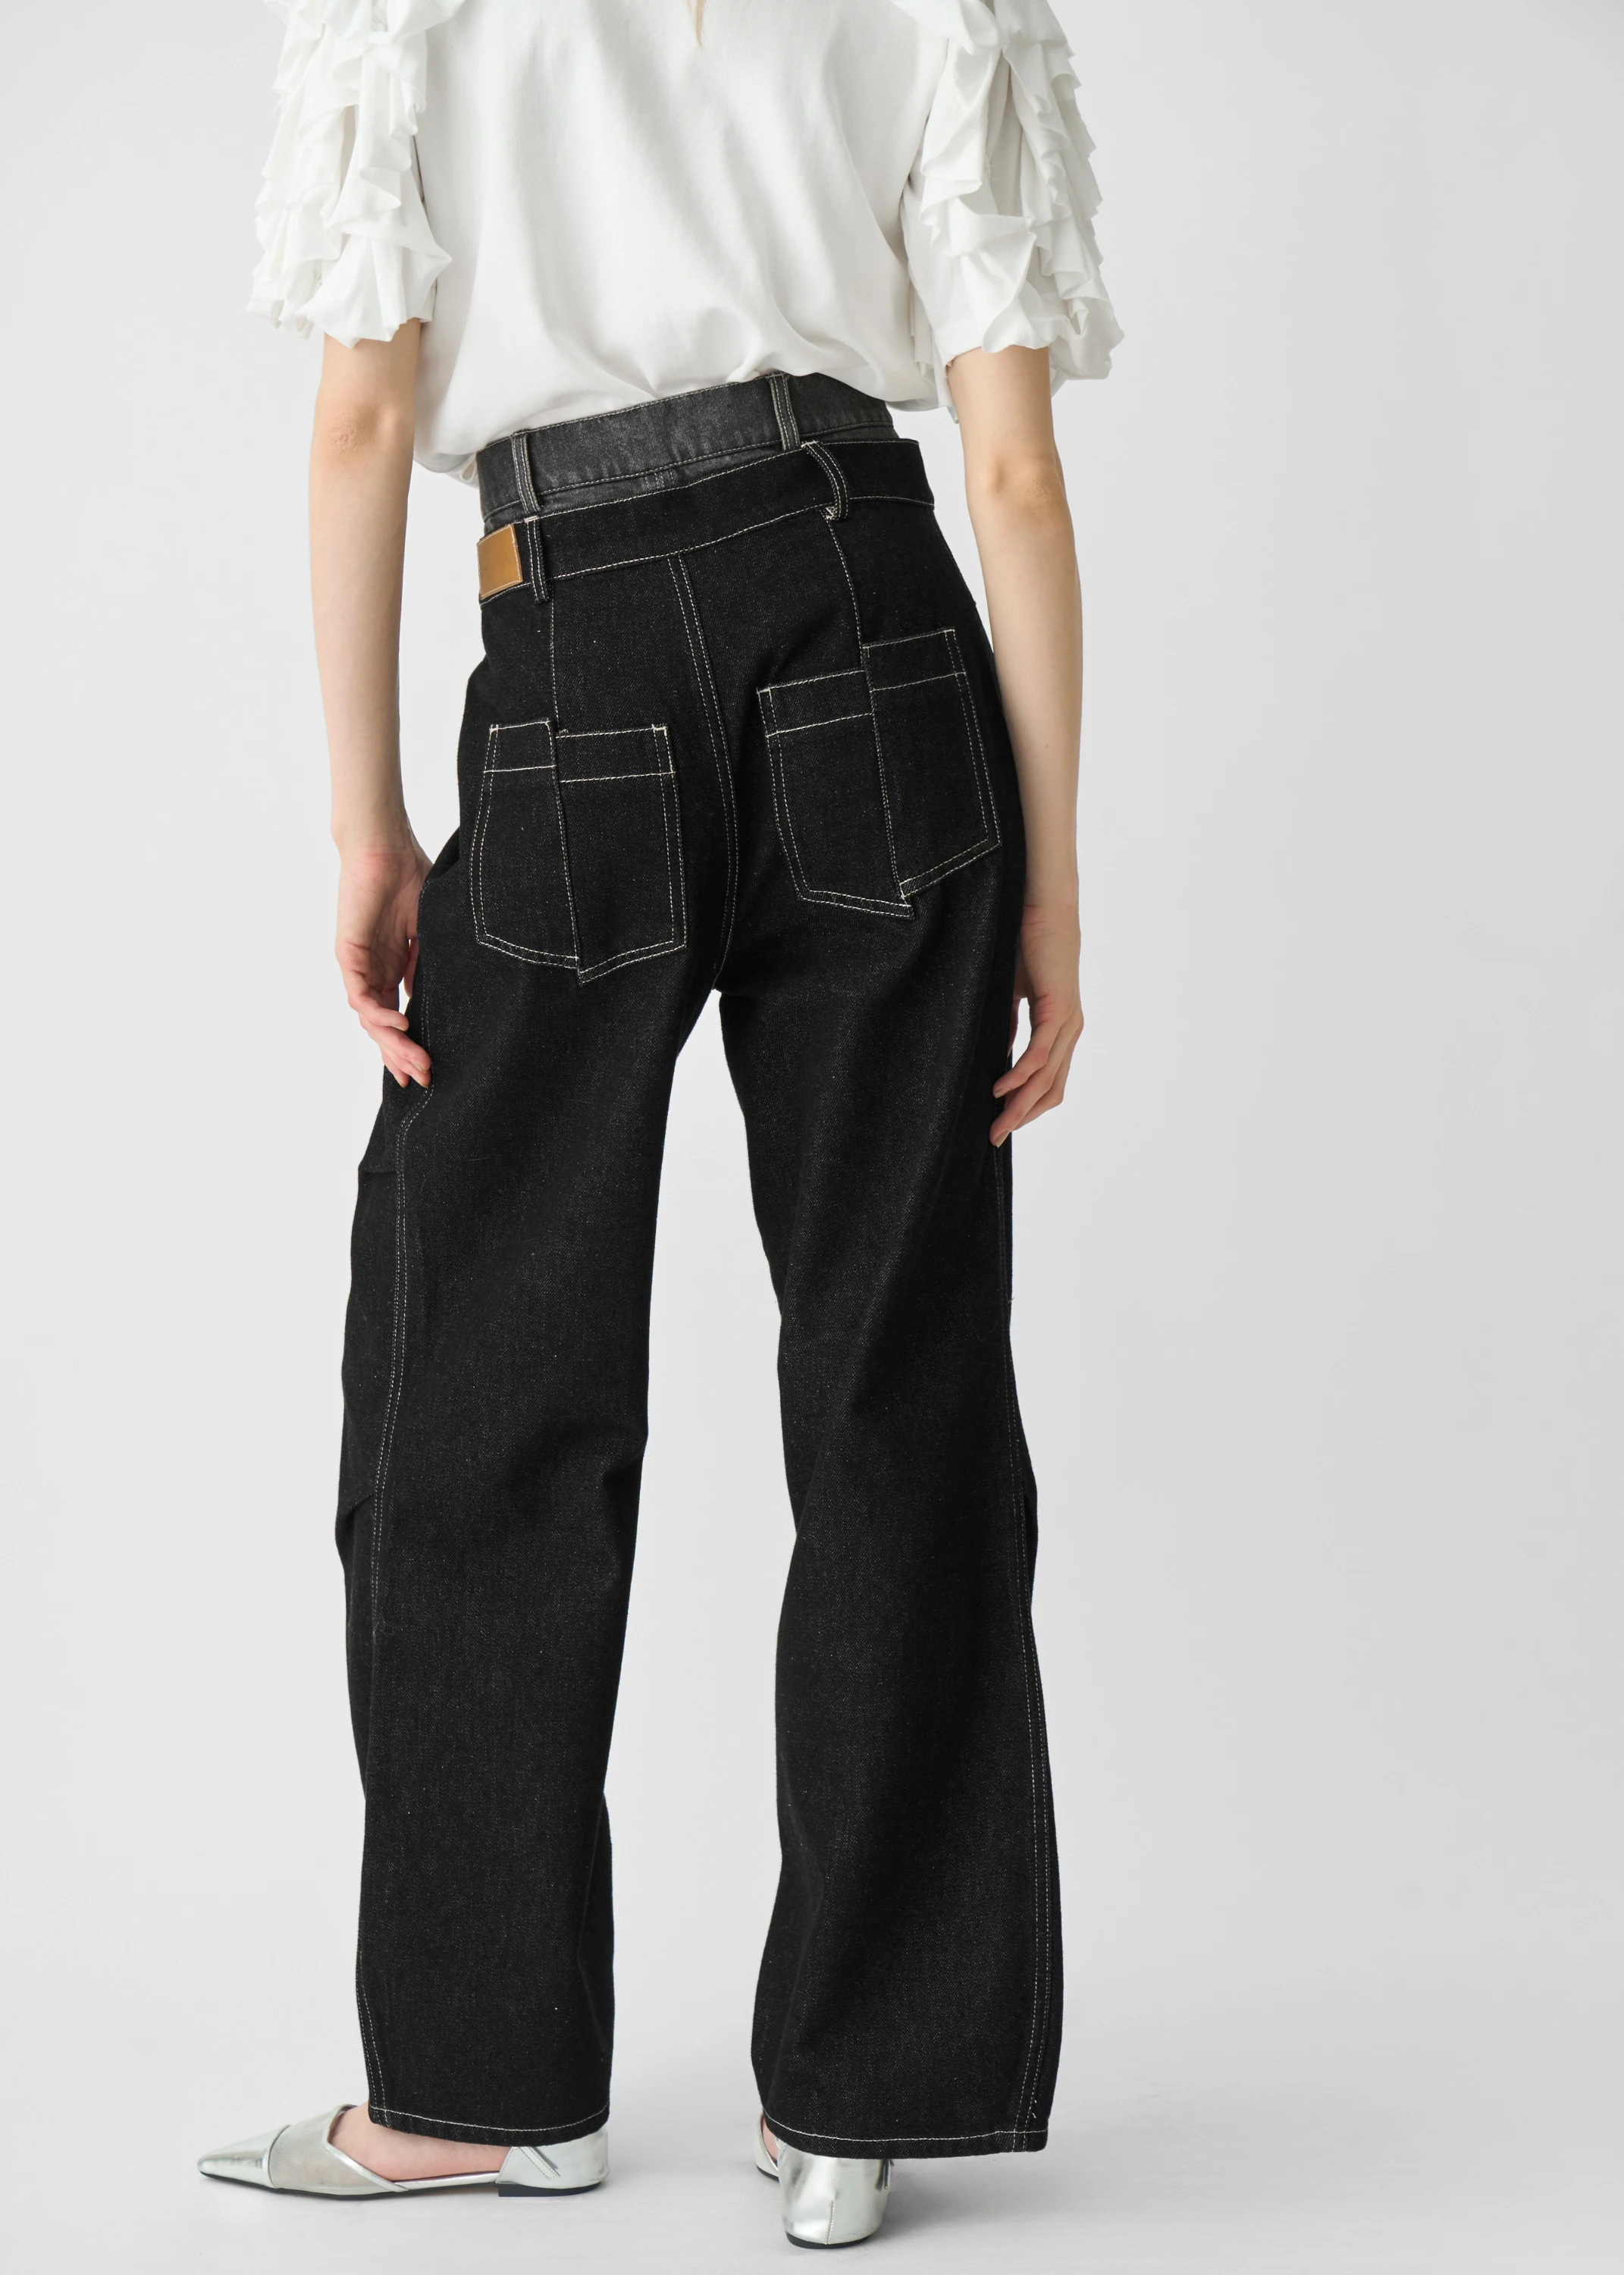 日本製在庫y様専用 :ベルトデニムドッキング ロングスカート